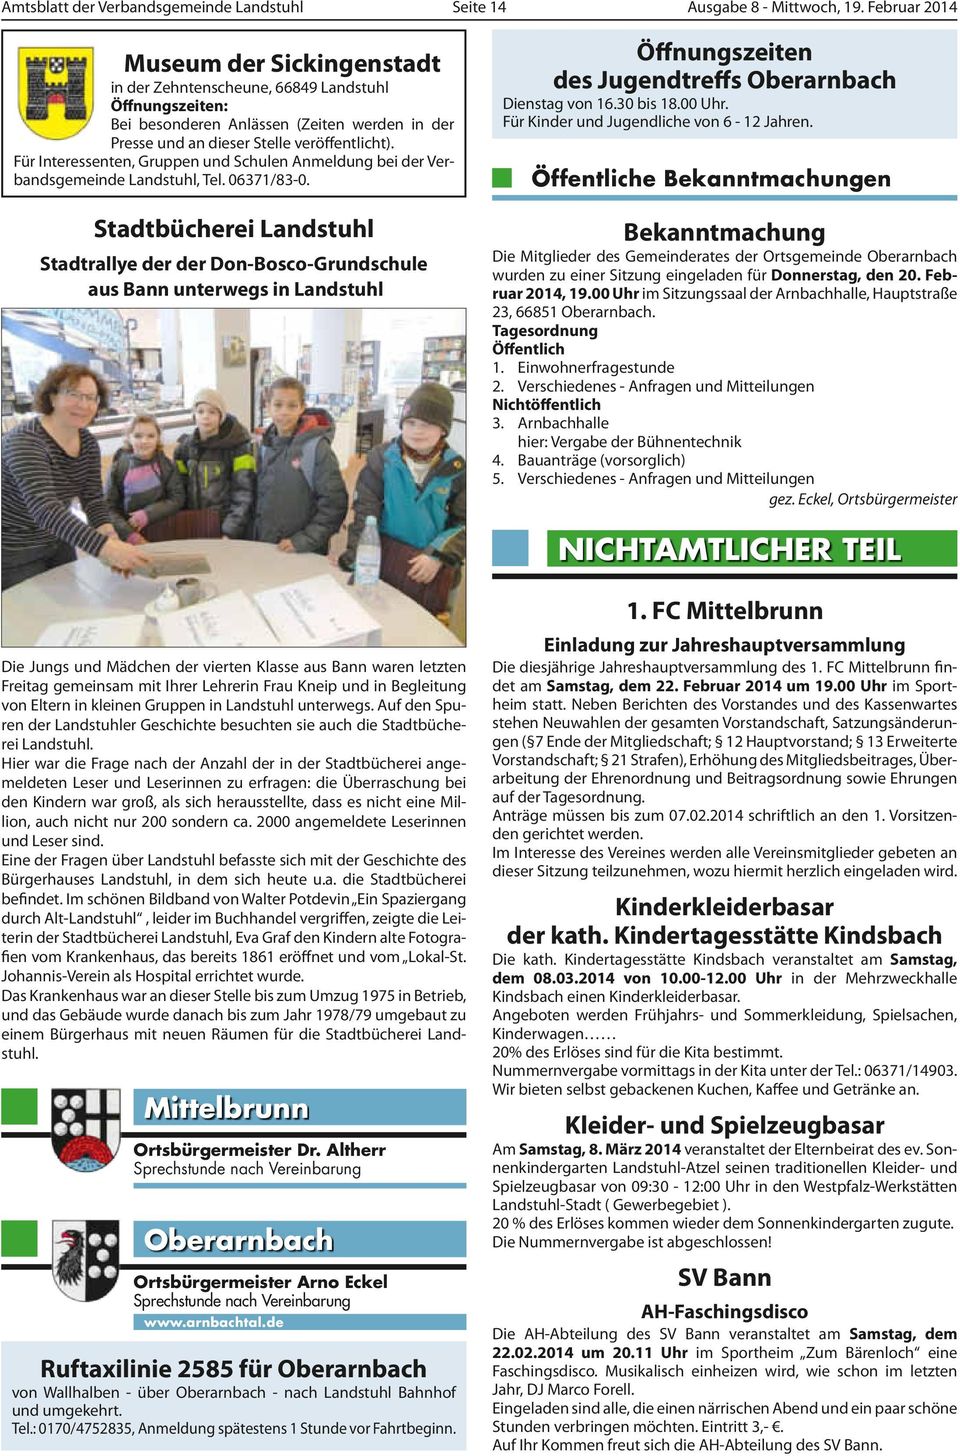 Für Interessenten, Gruppen und Schulen Anmeldung bei der Verbandsgemeinde Landstuhl, Tel. 06371/83-0.